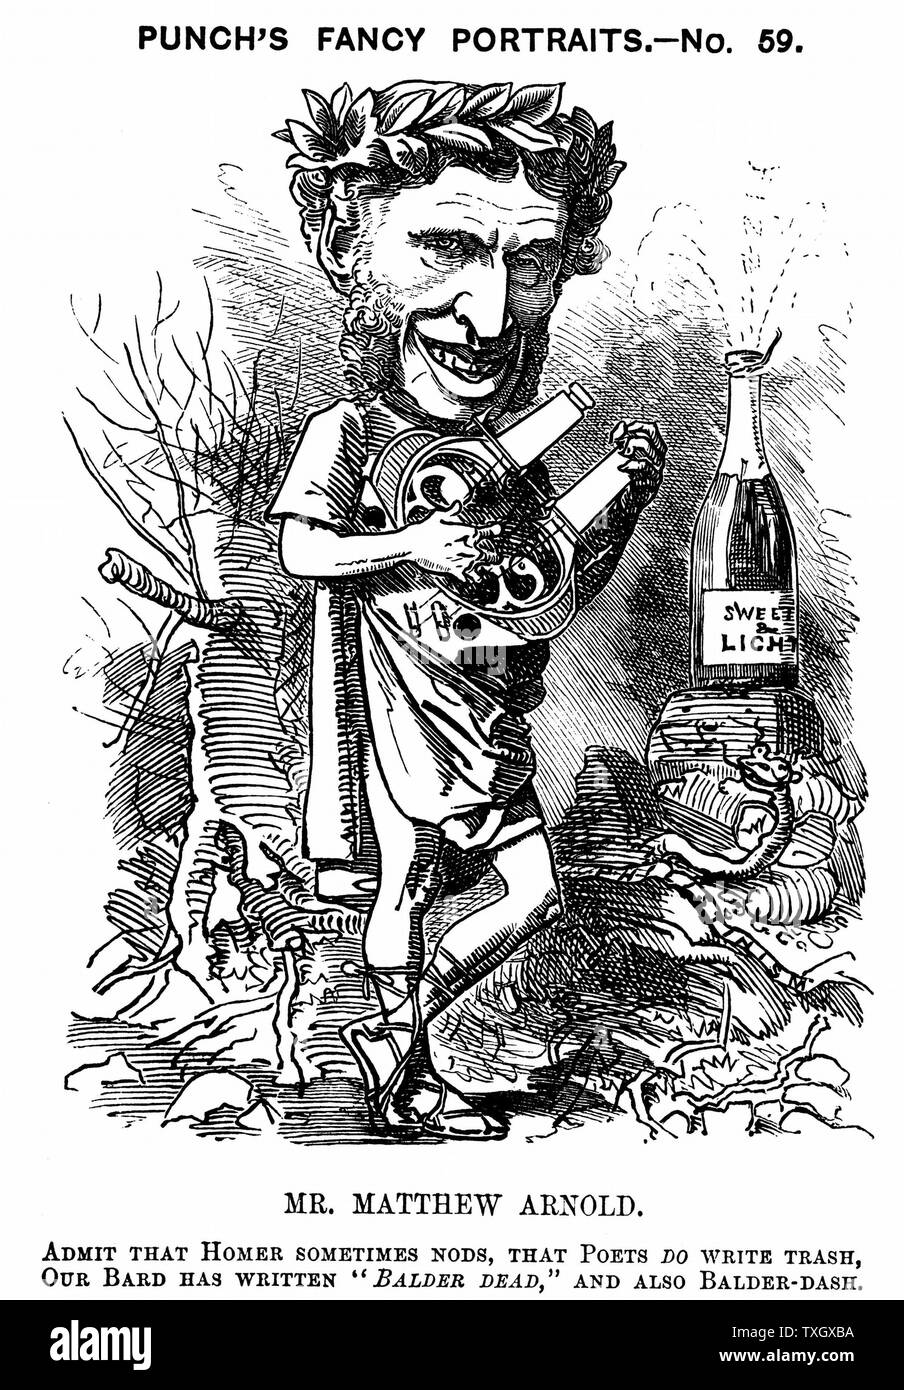 Matthew Arnold (1822-1888), poète, critique et pédagogue. Fils aîné de Thomas Arnold, directeur de la Rugby School Cartoon par Edward Linley Sambourne dans la série de portraits de fantaisie de 'Punch' 1881 gravure sur bois Londres Banque D'Images